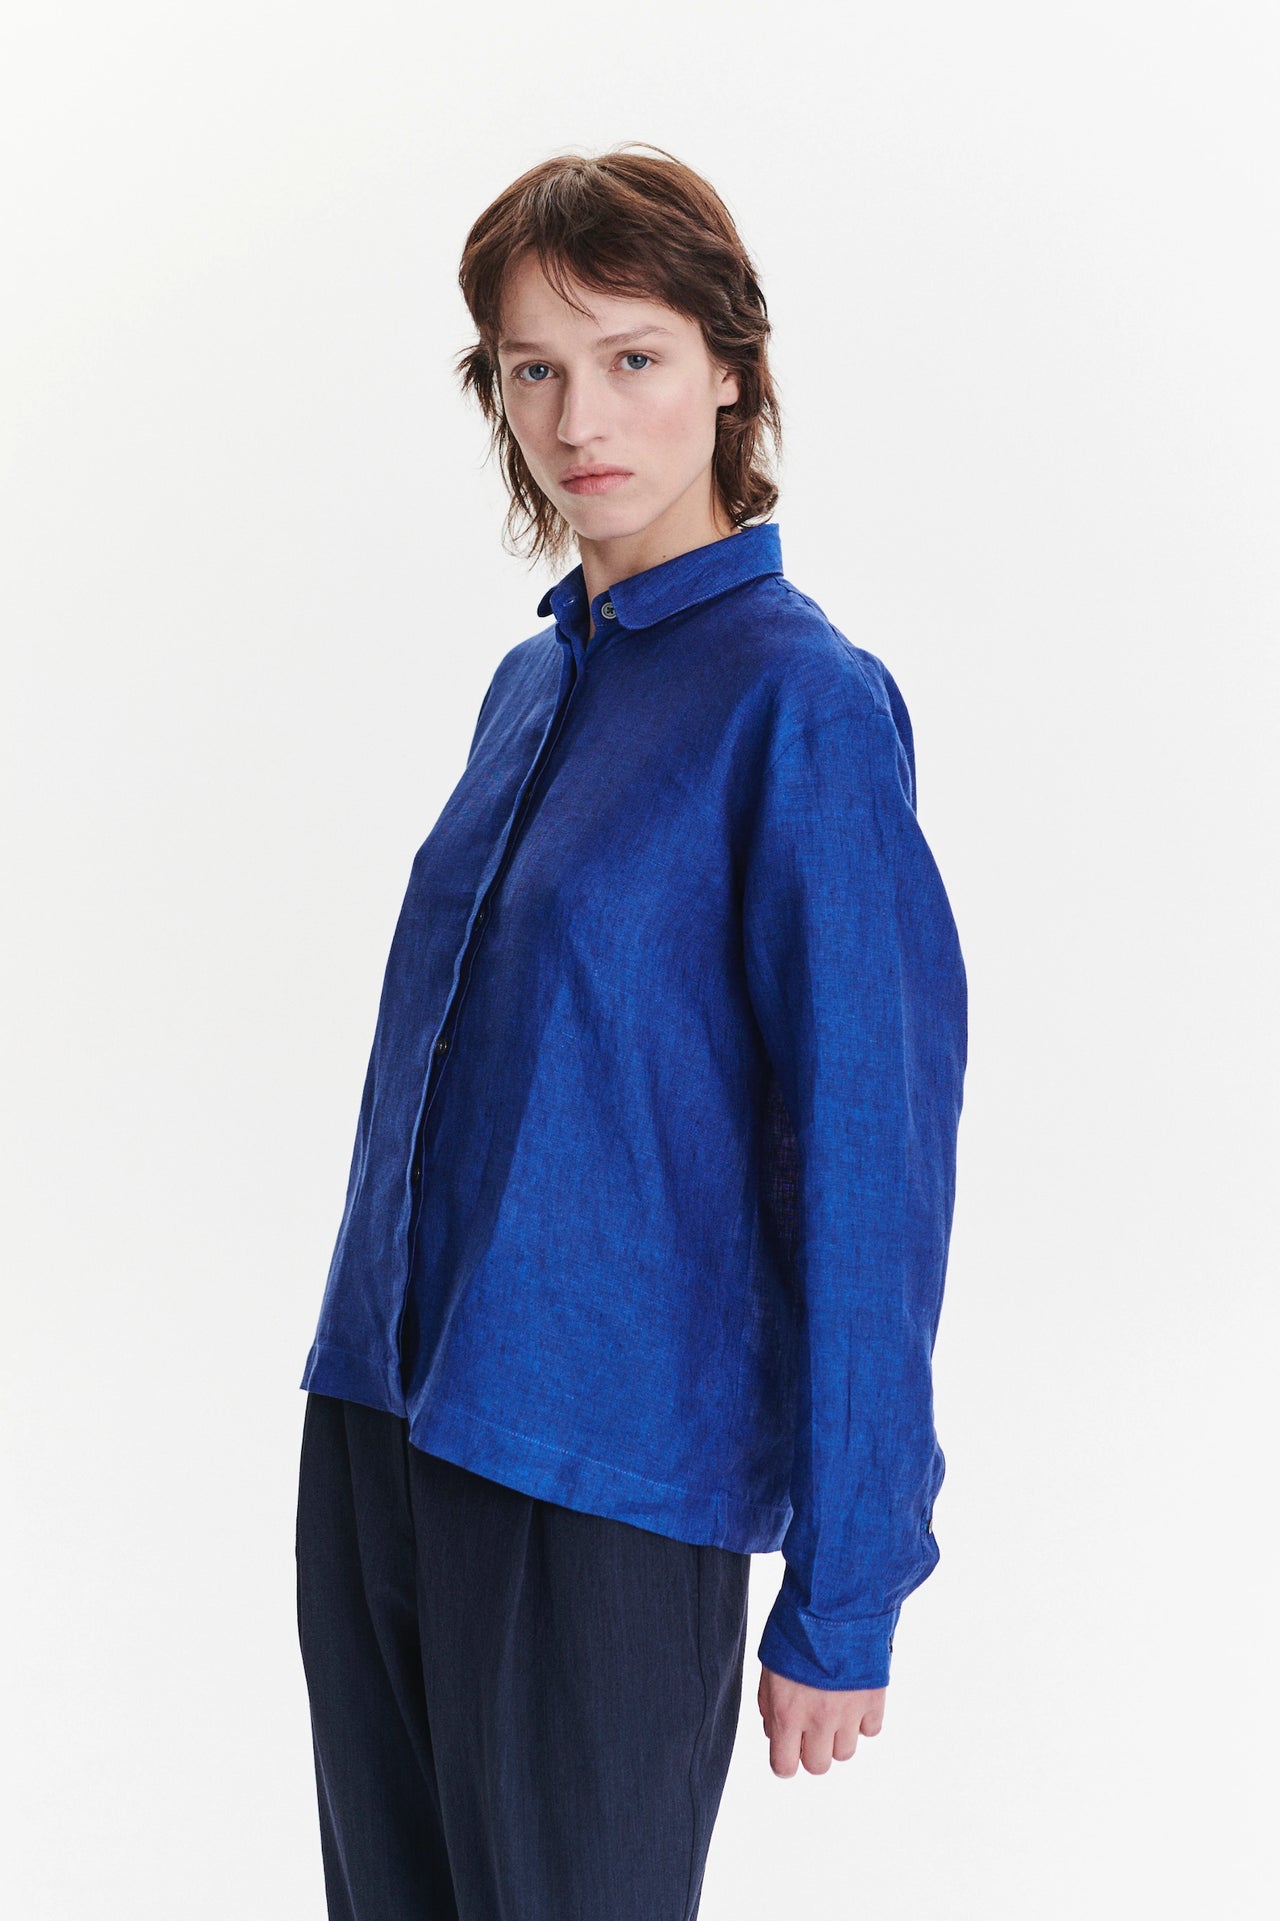 Cute Round Collar Shirt in a Cobalt Soft Italian Linen